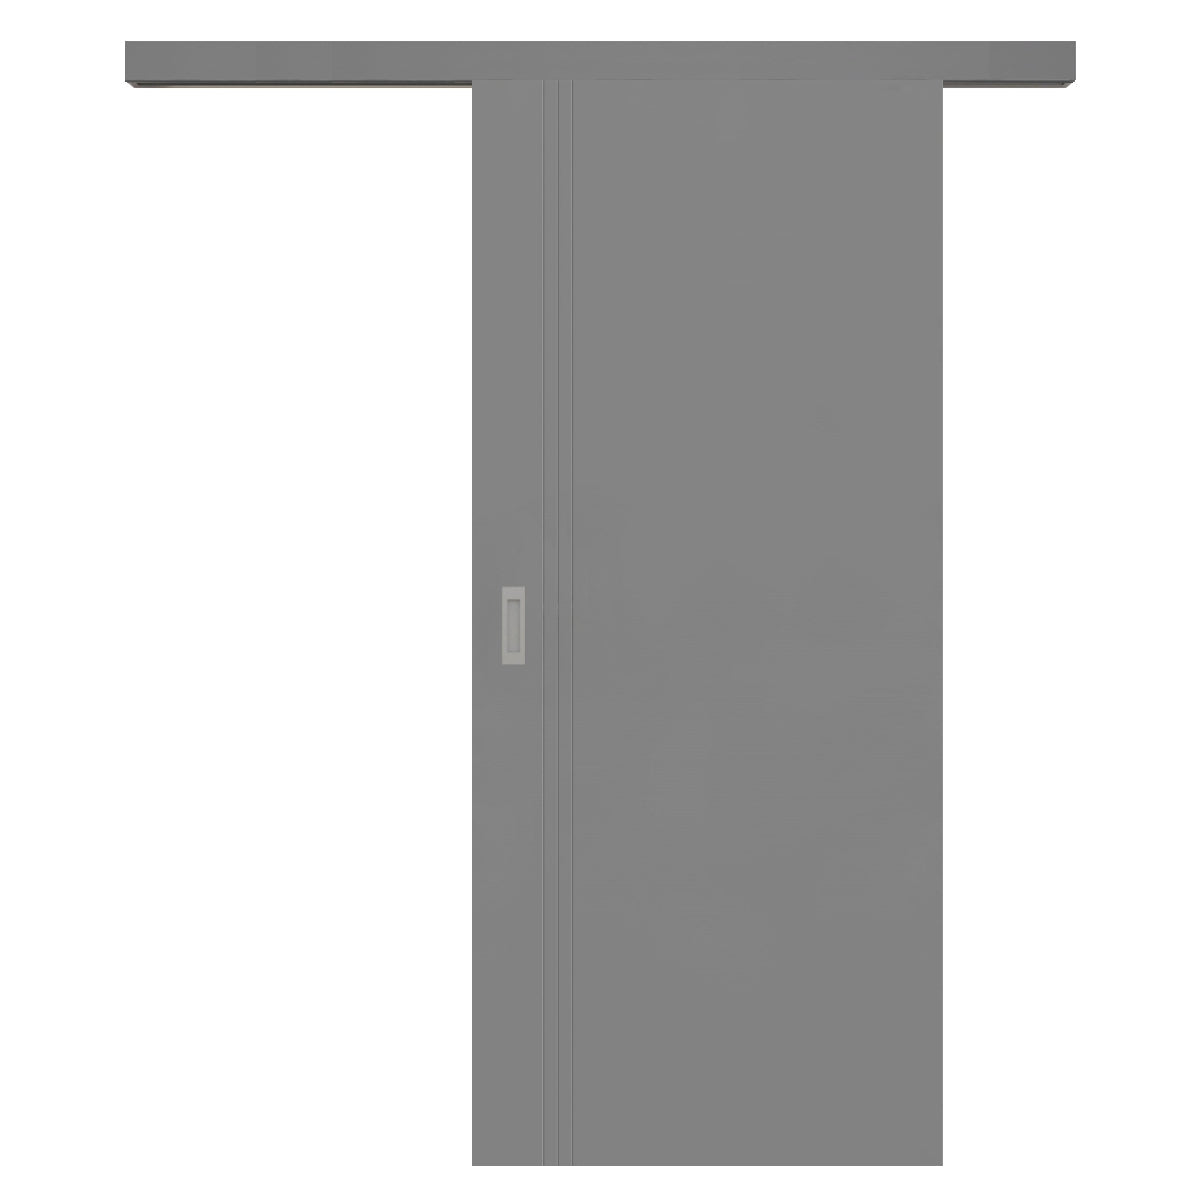 Schiebetür für Set mit grauem Laufkasten grau 3 Rillen aufrecht Schlosseite - Modell Designtür VS37